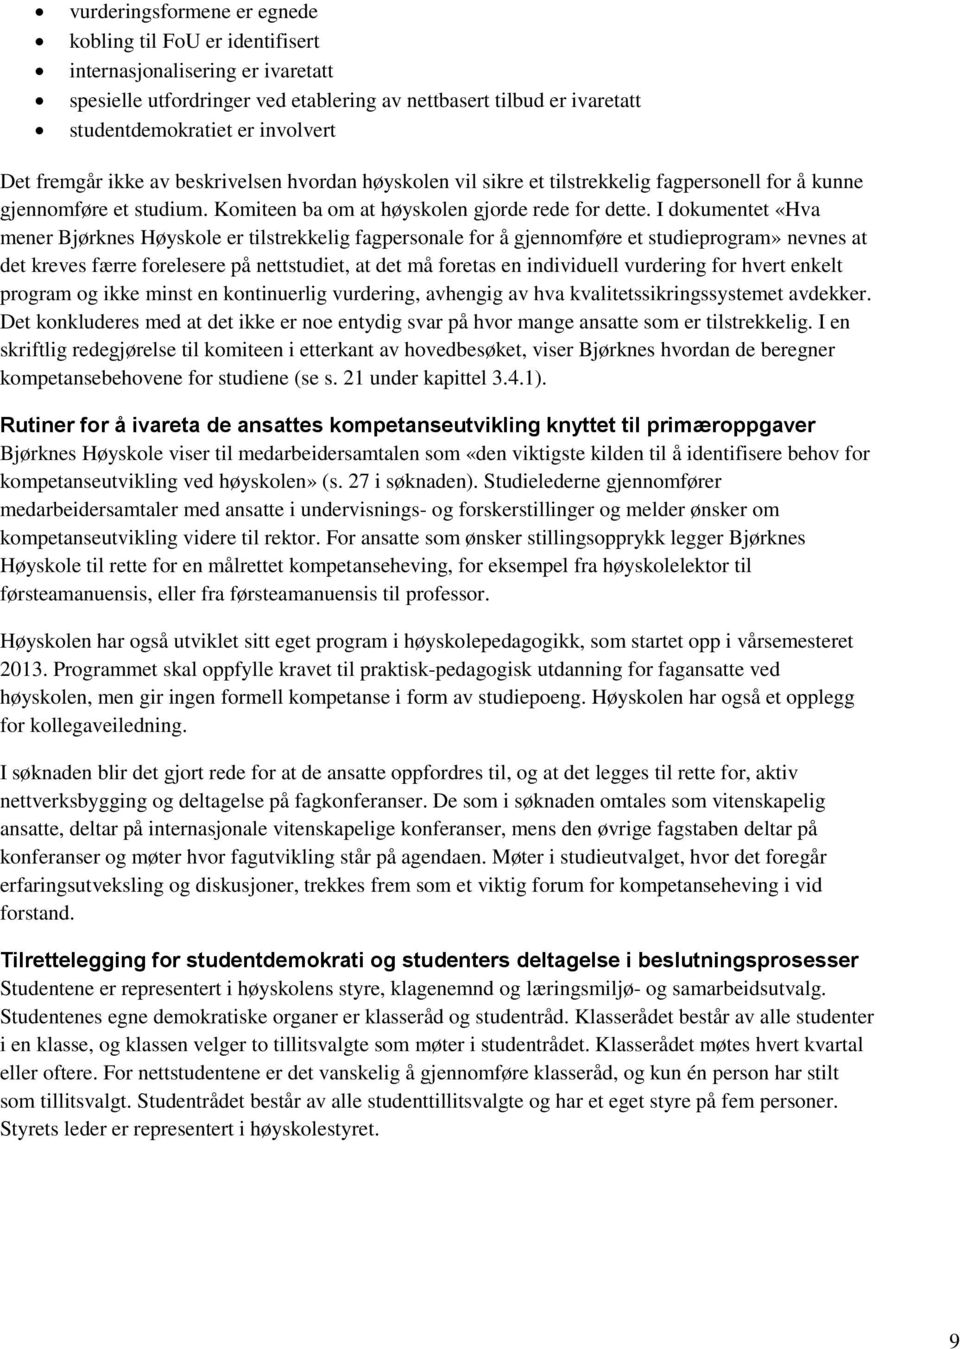 I dokumentet «Hva mener Bjørknes Høyskole er tilstrekkelig fagpersonale for å gjennomføre et studieprogram» nevnes at det kreves færre forelesere på nettstudiet, at det må foretas en individuell